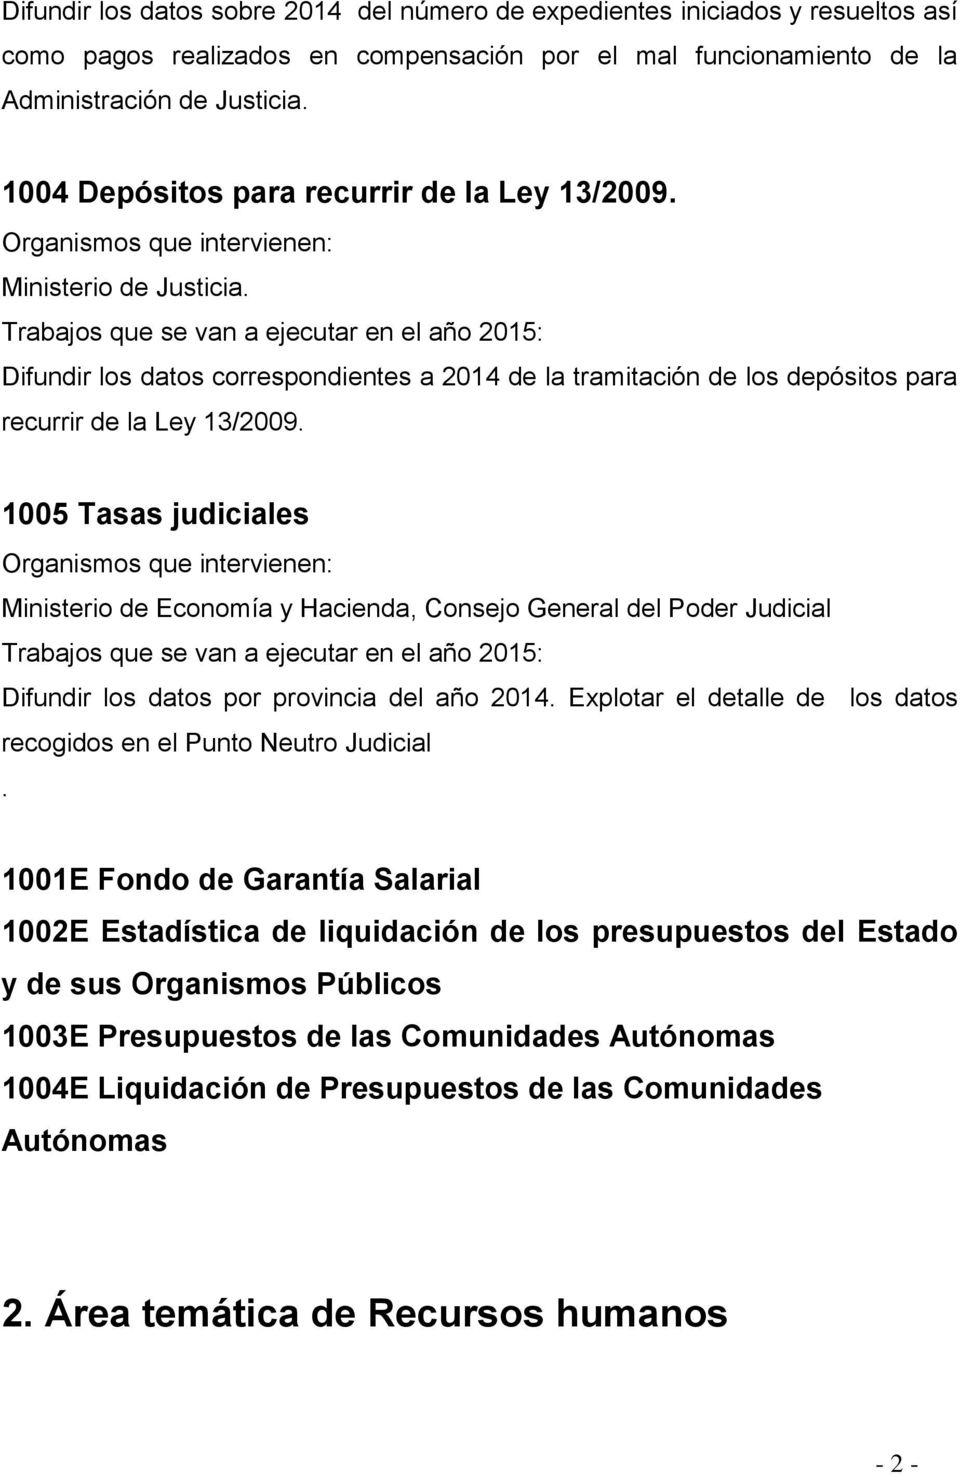 1005 Tasas judiciales Ministerio de Economía y Hacienda, Consejo General del Poder Judicial Difundir los datos por provincia del año 2014.